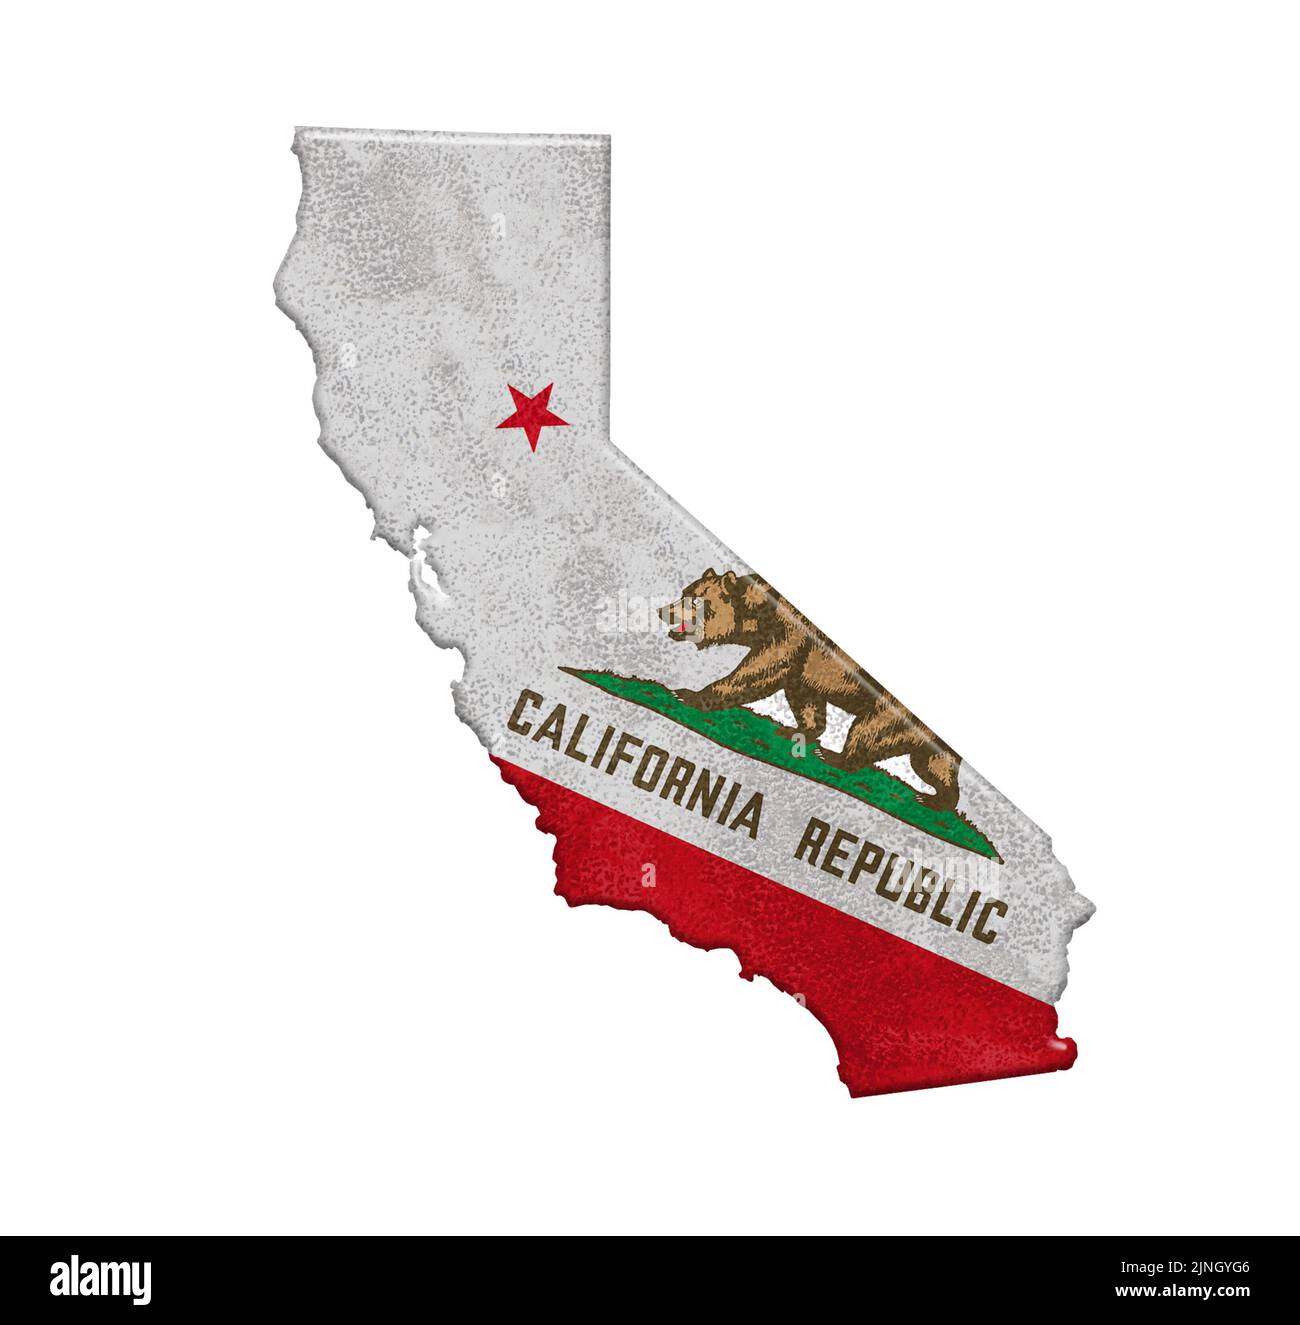 Bandera y mapa del estado de California, EE.UU Foto de stock